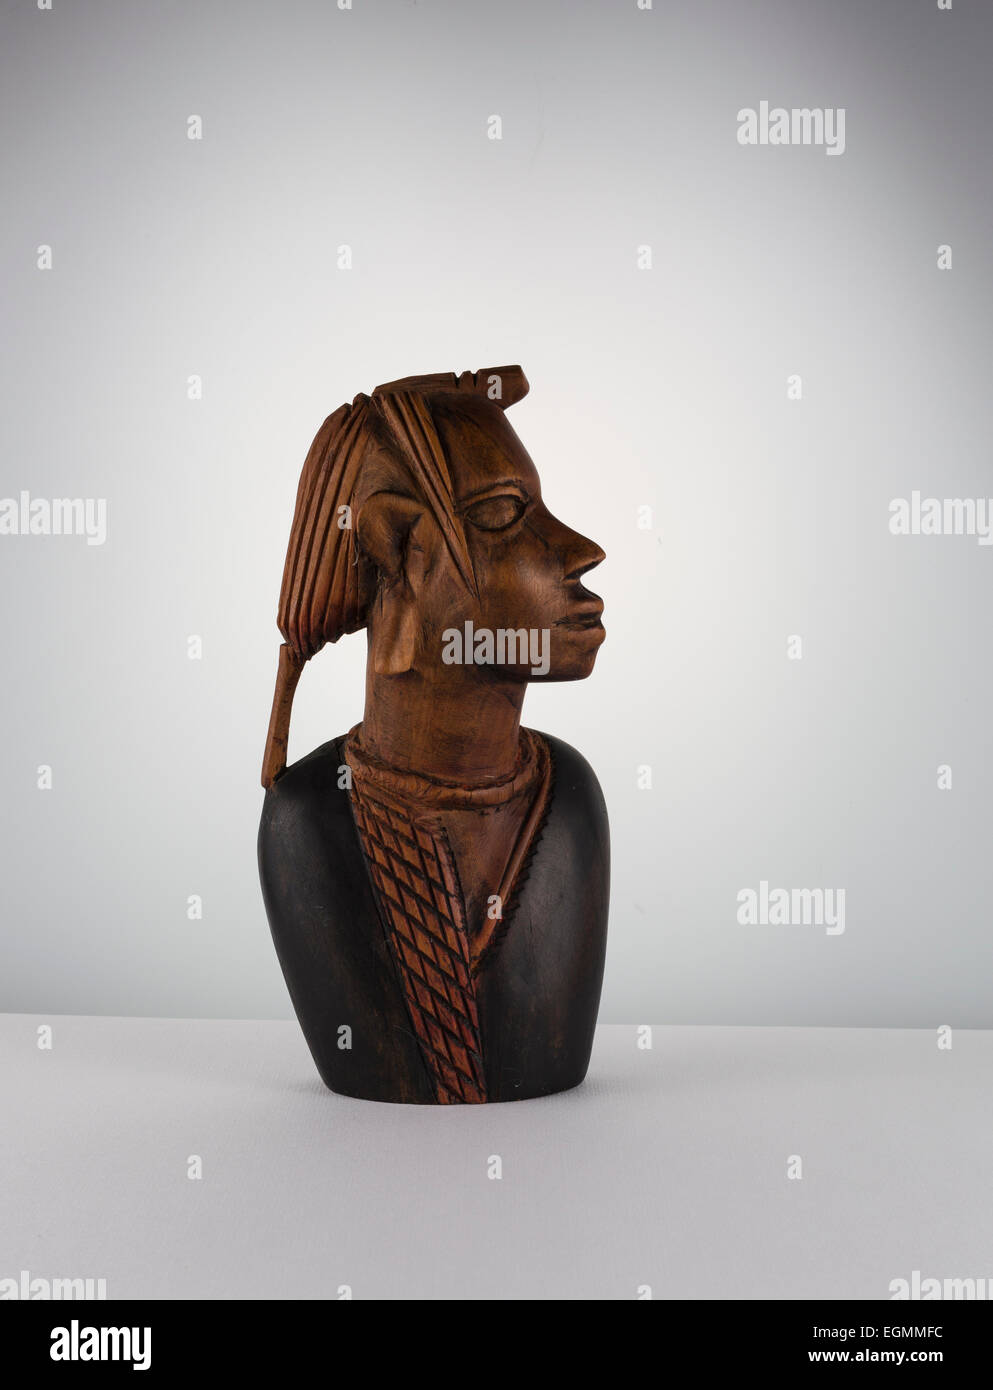 Sculpture en bois de guerrier Masai Photo Stock - Alamy